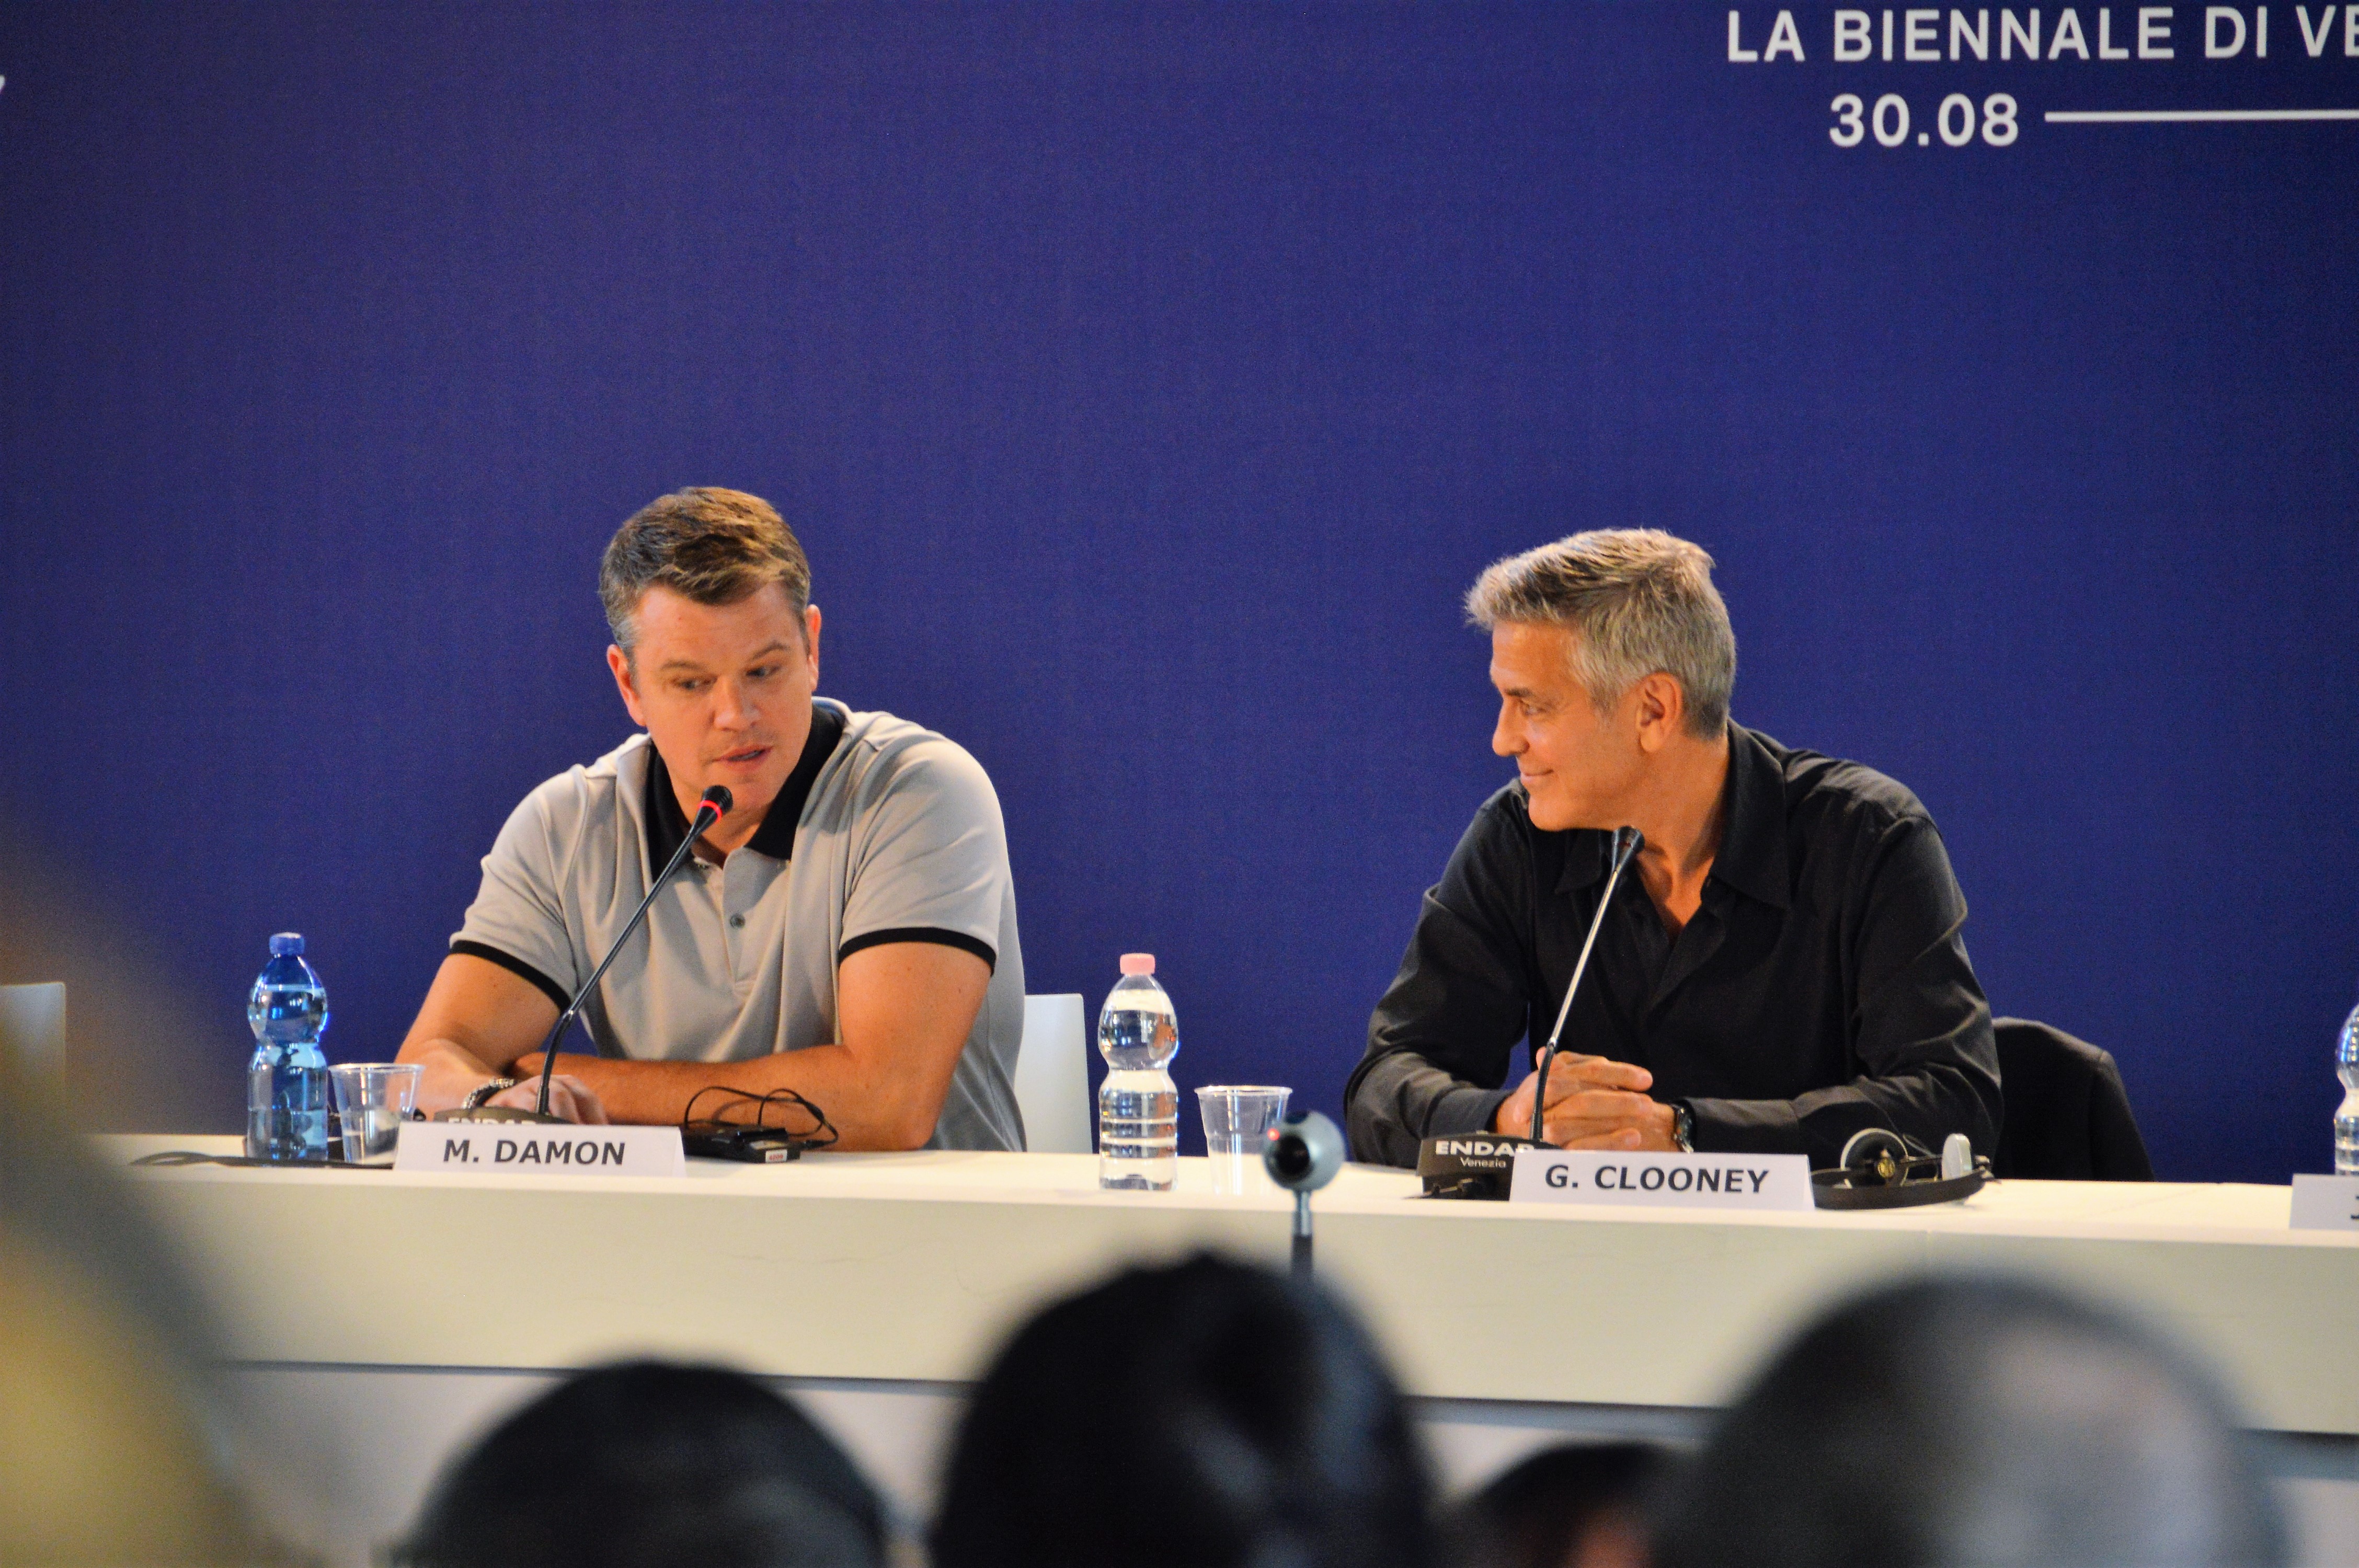 10 - Scambio d'intesa fra George Clooney e Matt Damon durante la conferenza stampa